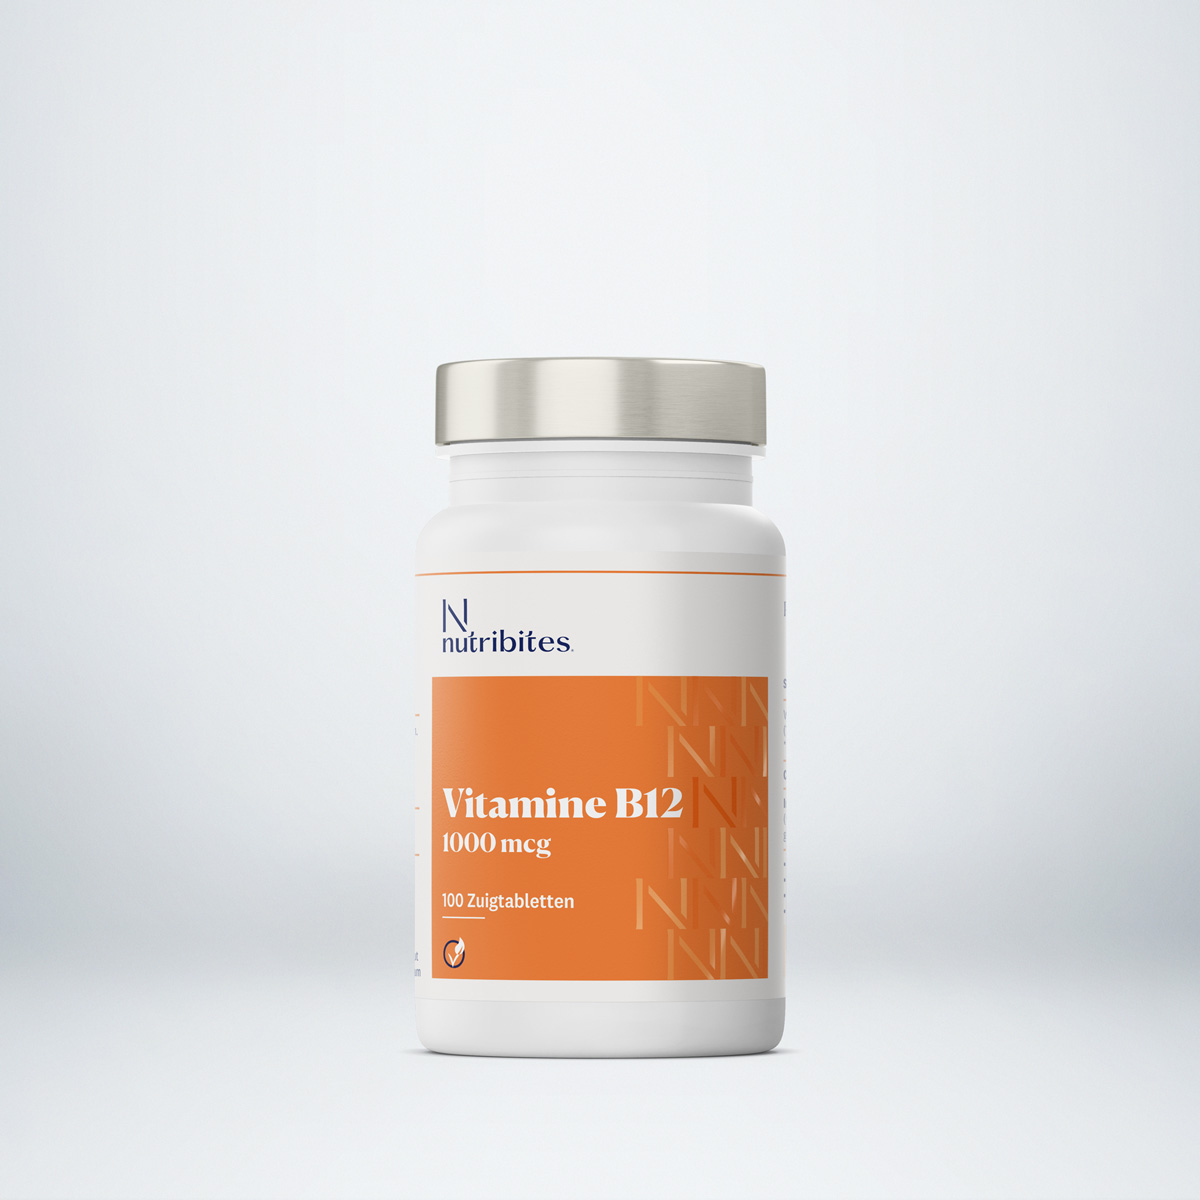 bloeden scheerapparaat cent Vitamine B12 - 100 zuigtabletten - Biologisch actieve vorm